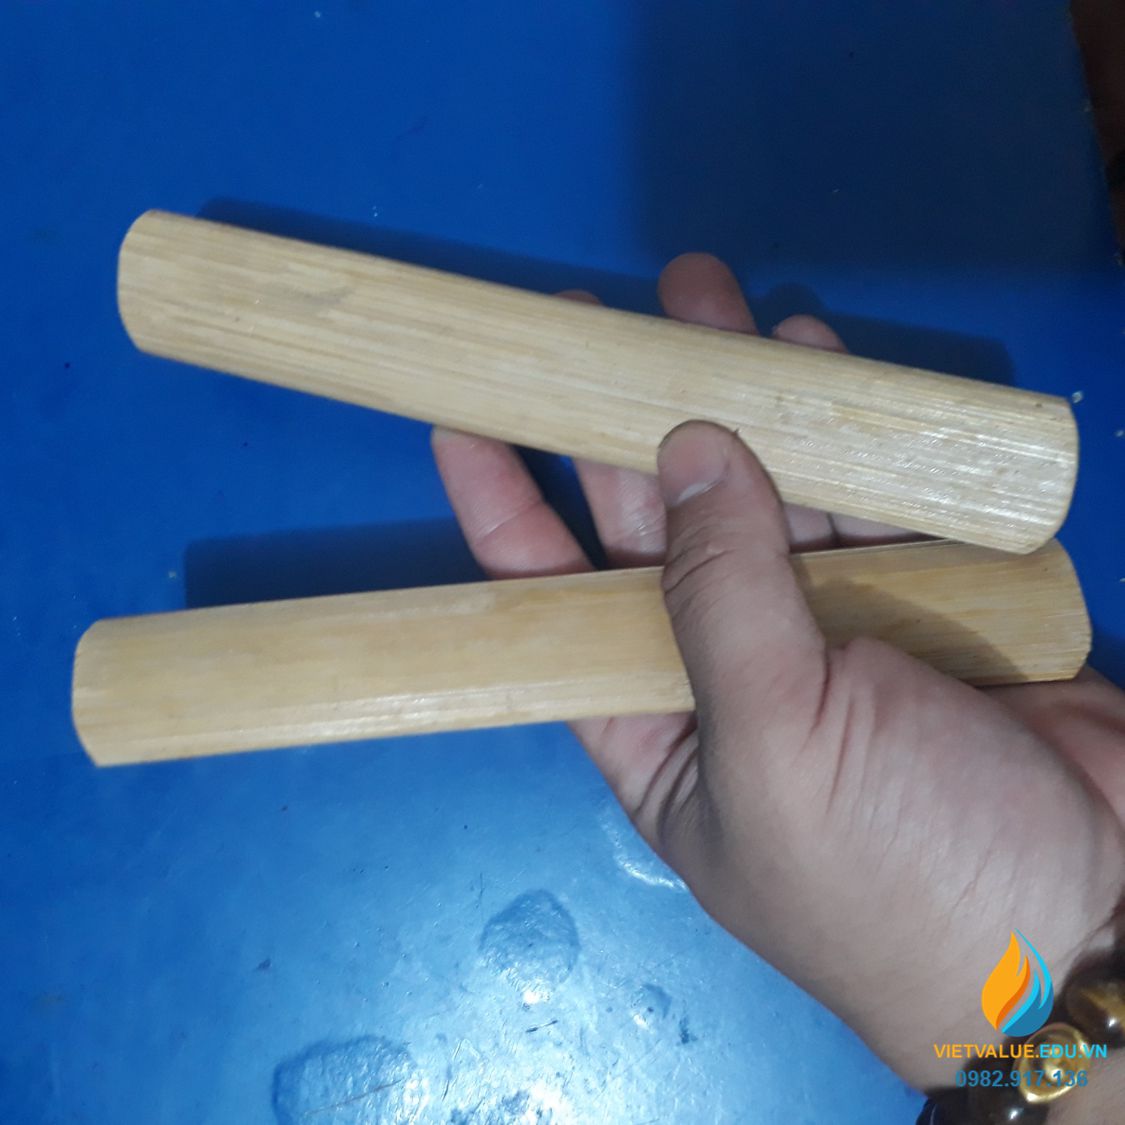 Dụng cụ tạo phách nhạc bằng gỗ, dụng cụ thực hành âm học cho học sinh